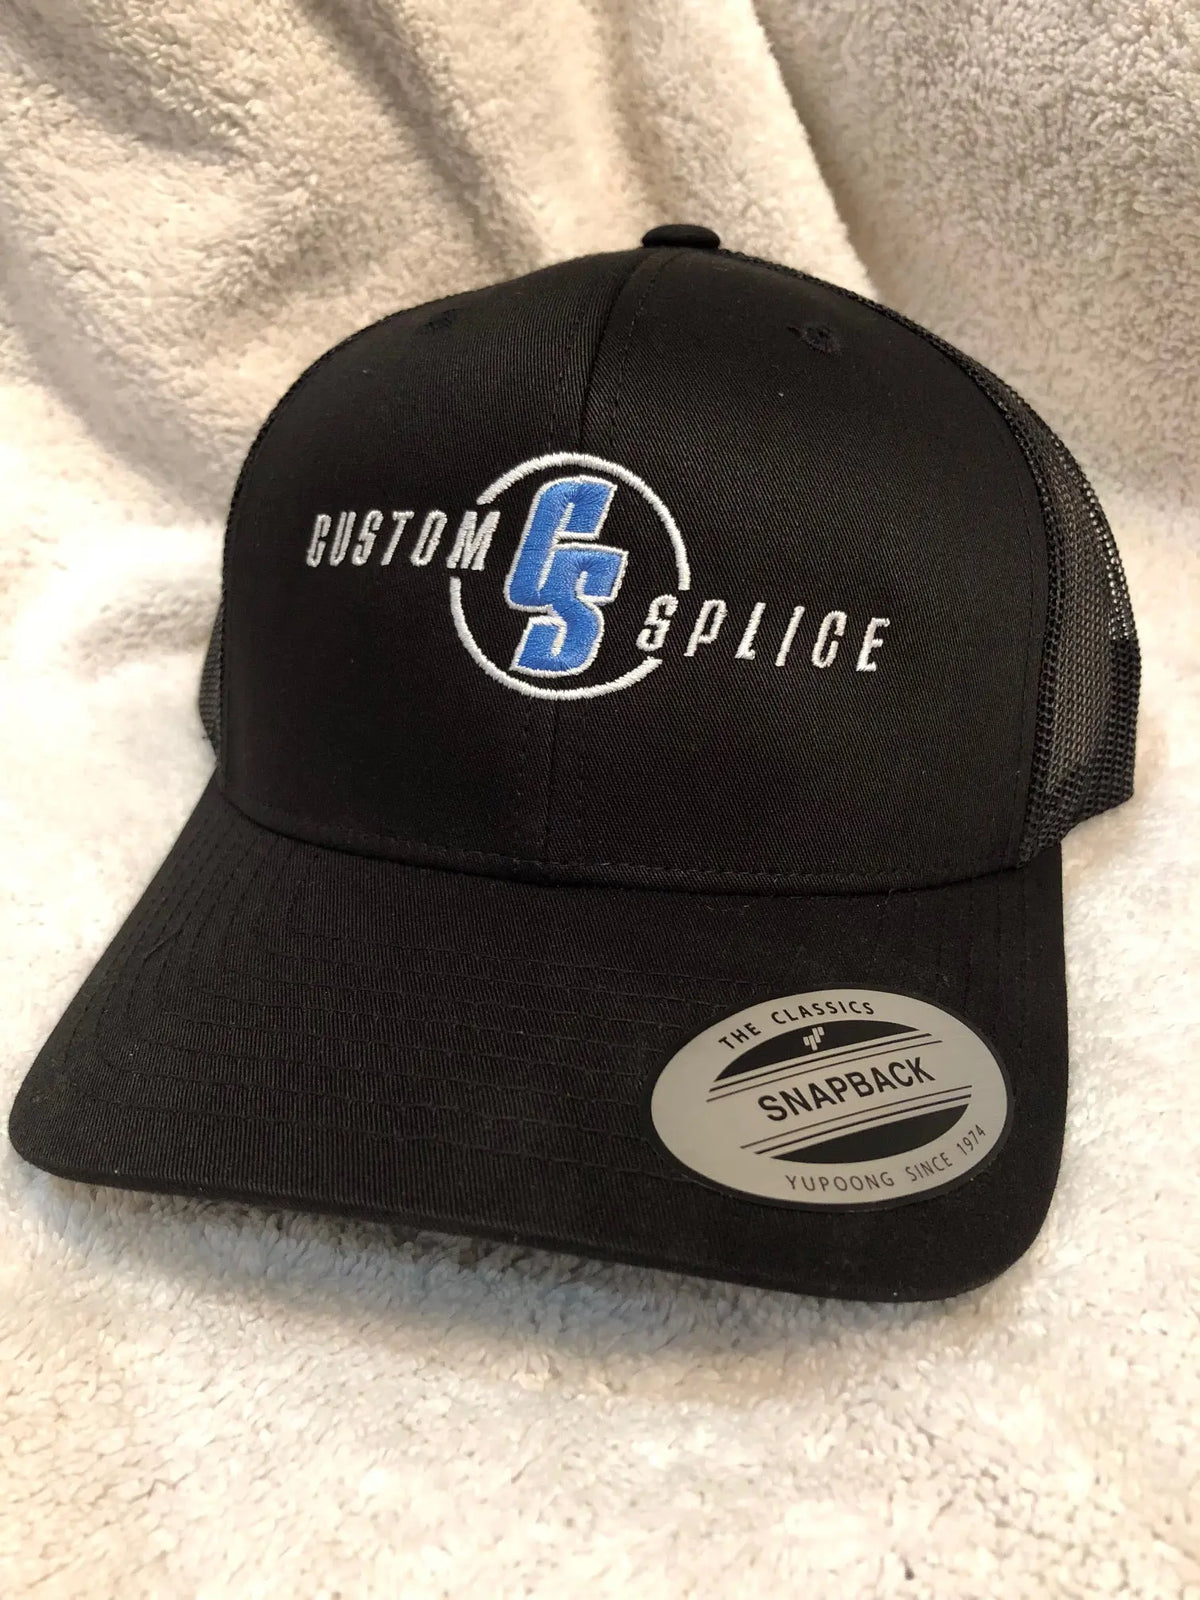 Custom Splice Hat Custom Splice